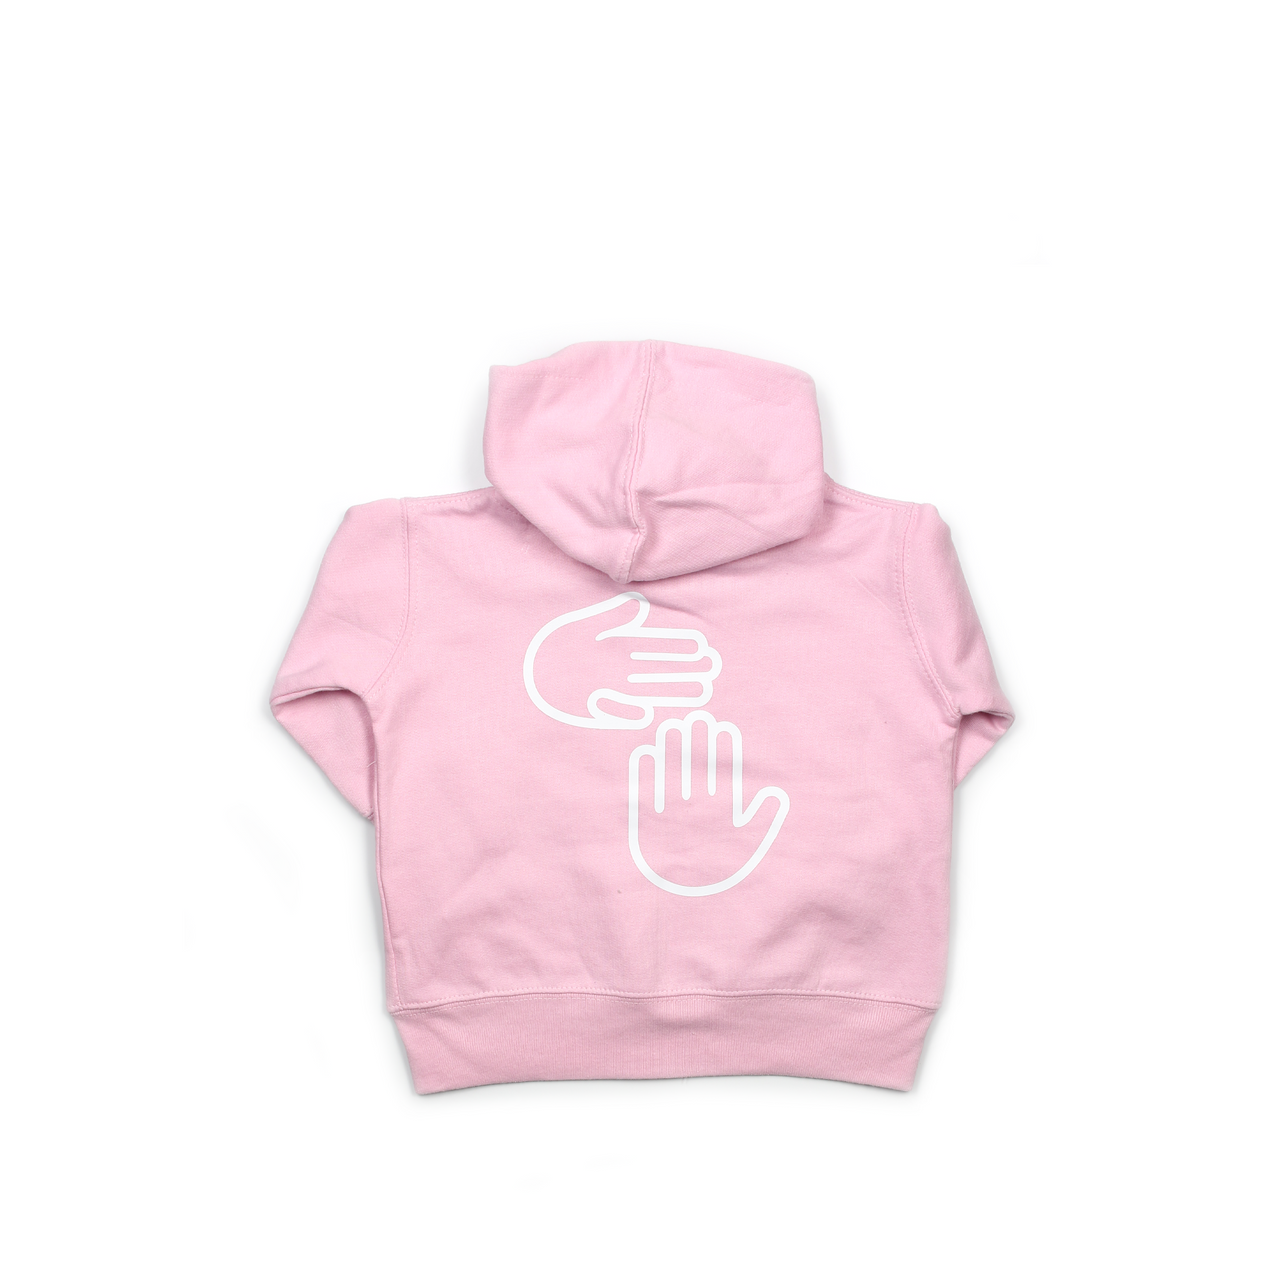 Michigan Hands Infant Zip Hoodie (Pink)